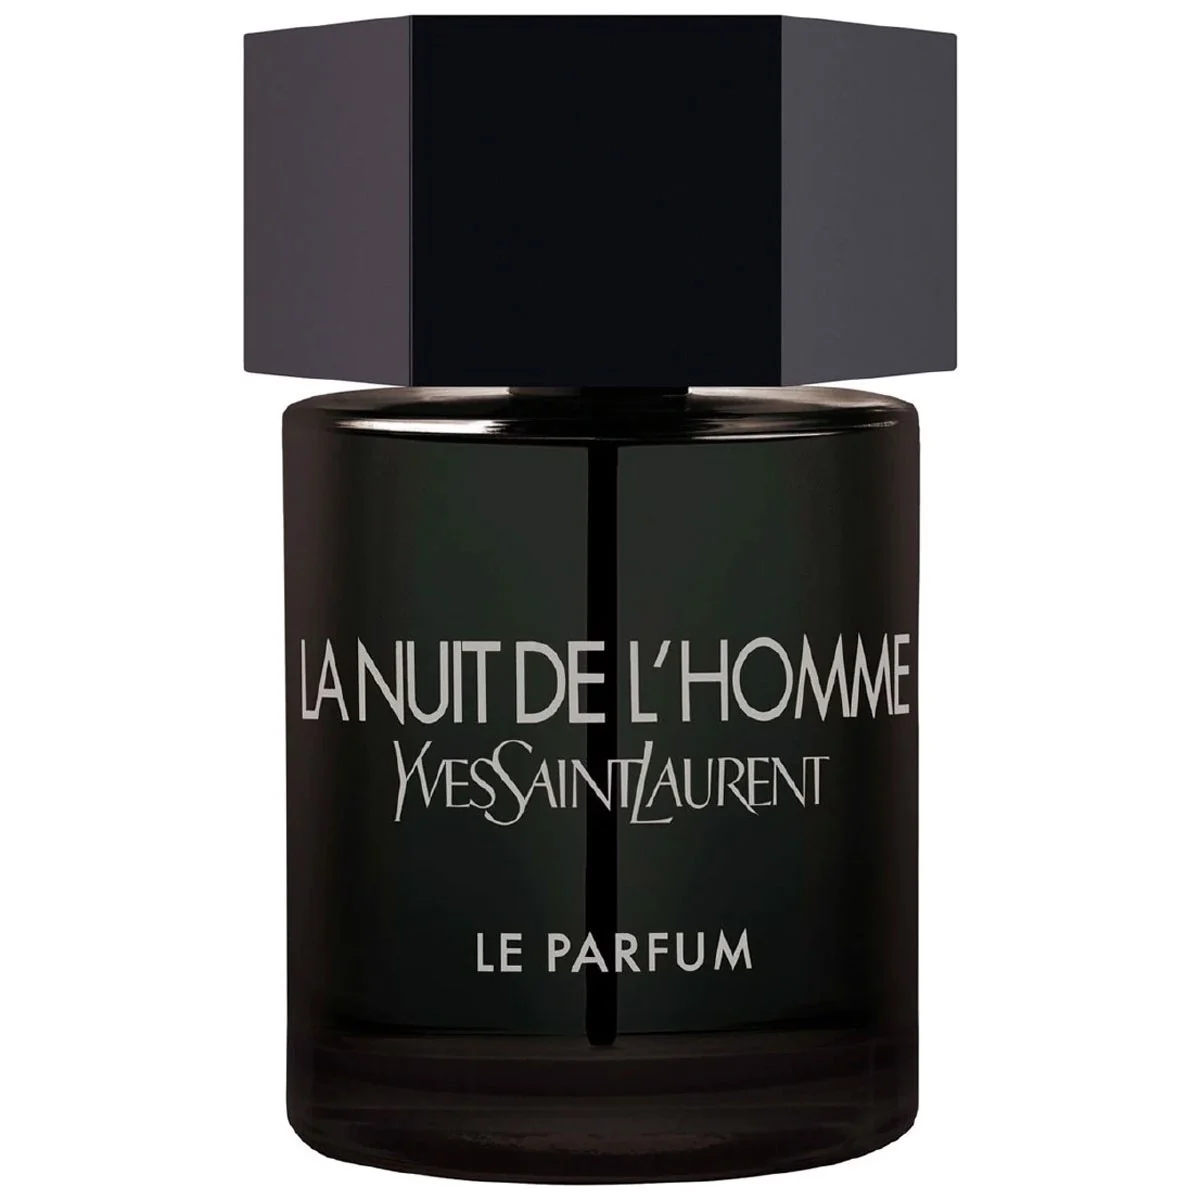 Yves Saint Laurent La Nuit de L'Homme Le Parfum 